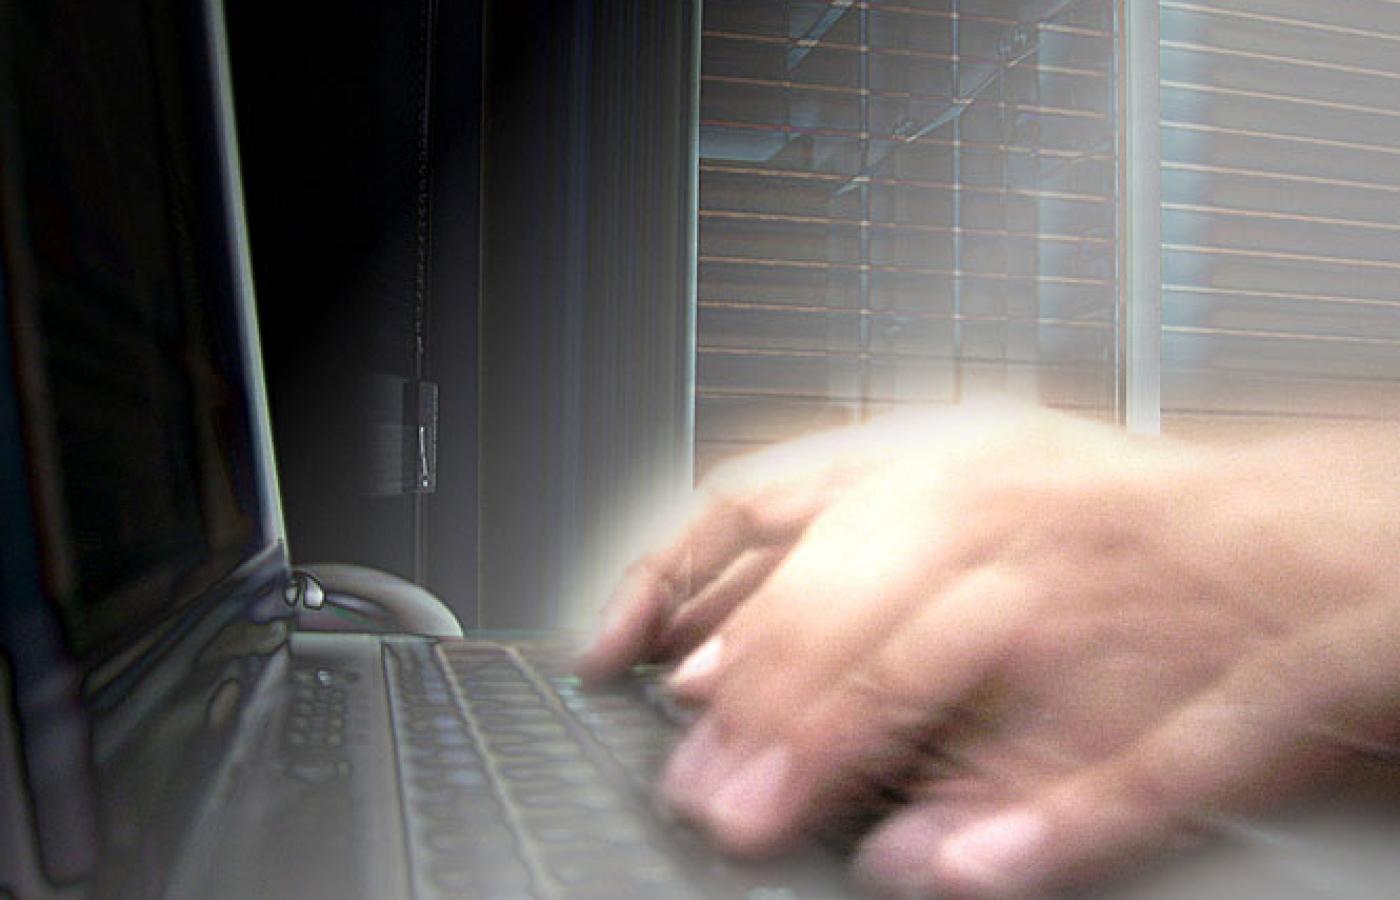 Coraz częściej za hakerskimi atakiami stoją zawodowi przestępcy komputerowi i agenci służb specjalnych